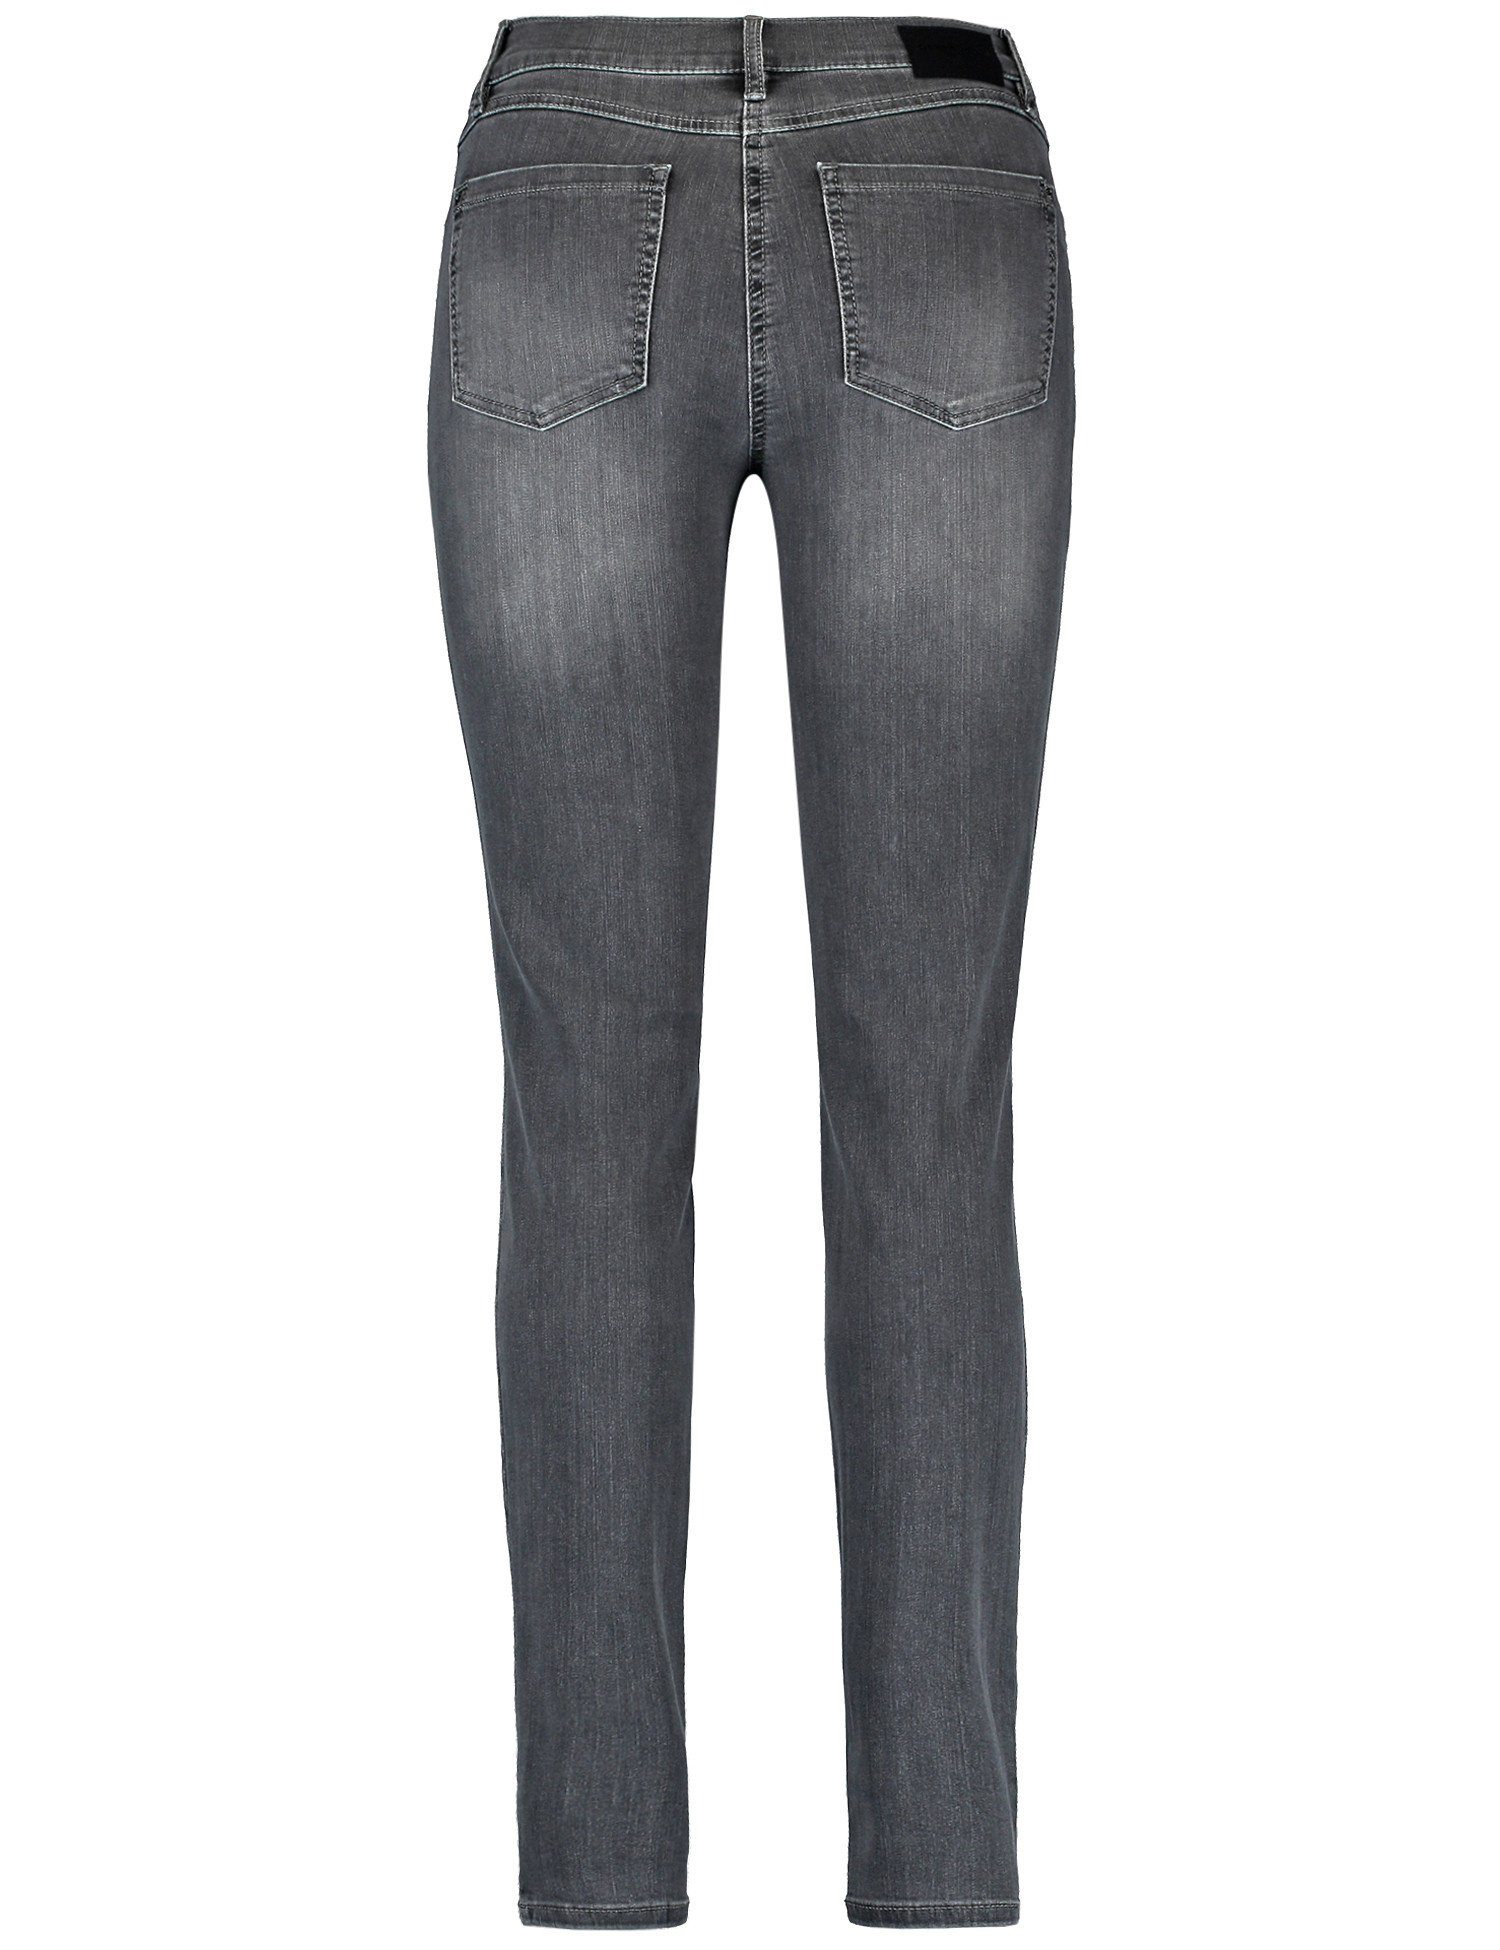 Stretch-Jeans 5-Pocket Jeans WEBER Best4me Anthra use GERRY Denim mit Skinny